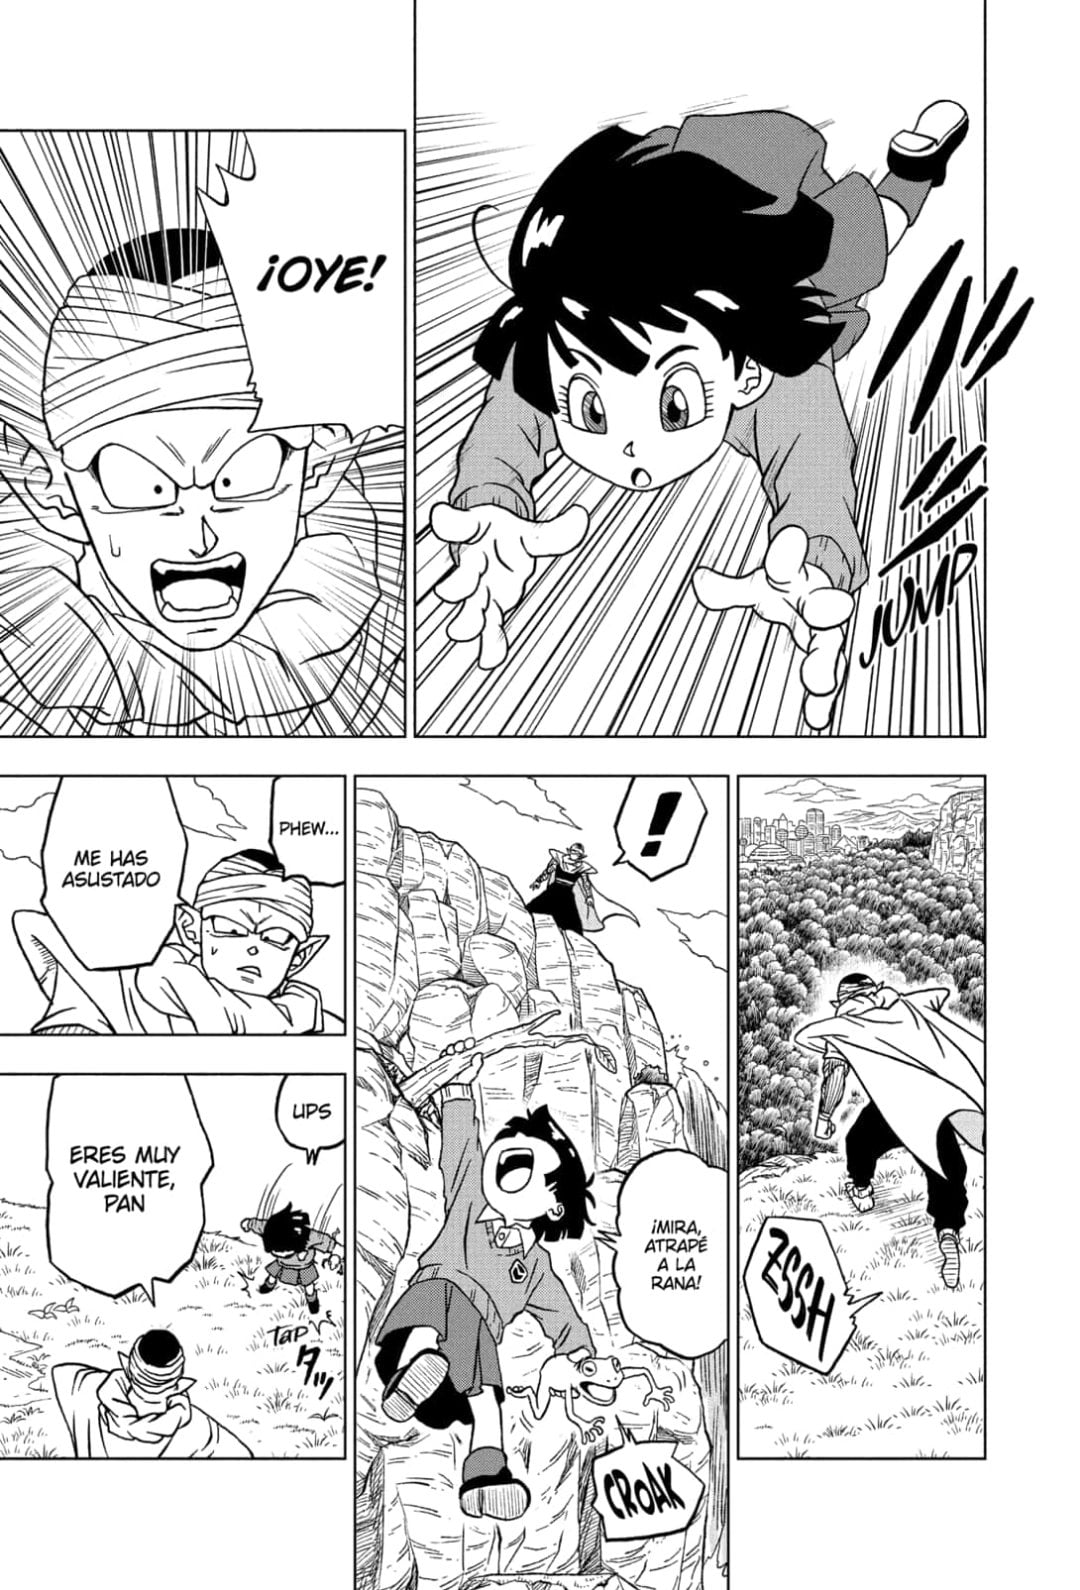 Dragon Ball Super: ¿Cuándo se estrena el capítulo 91 del manga?